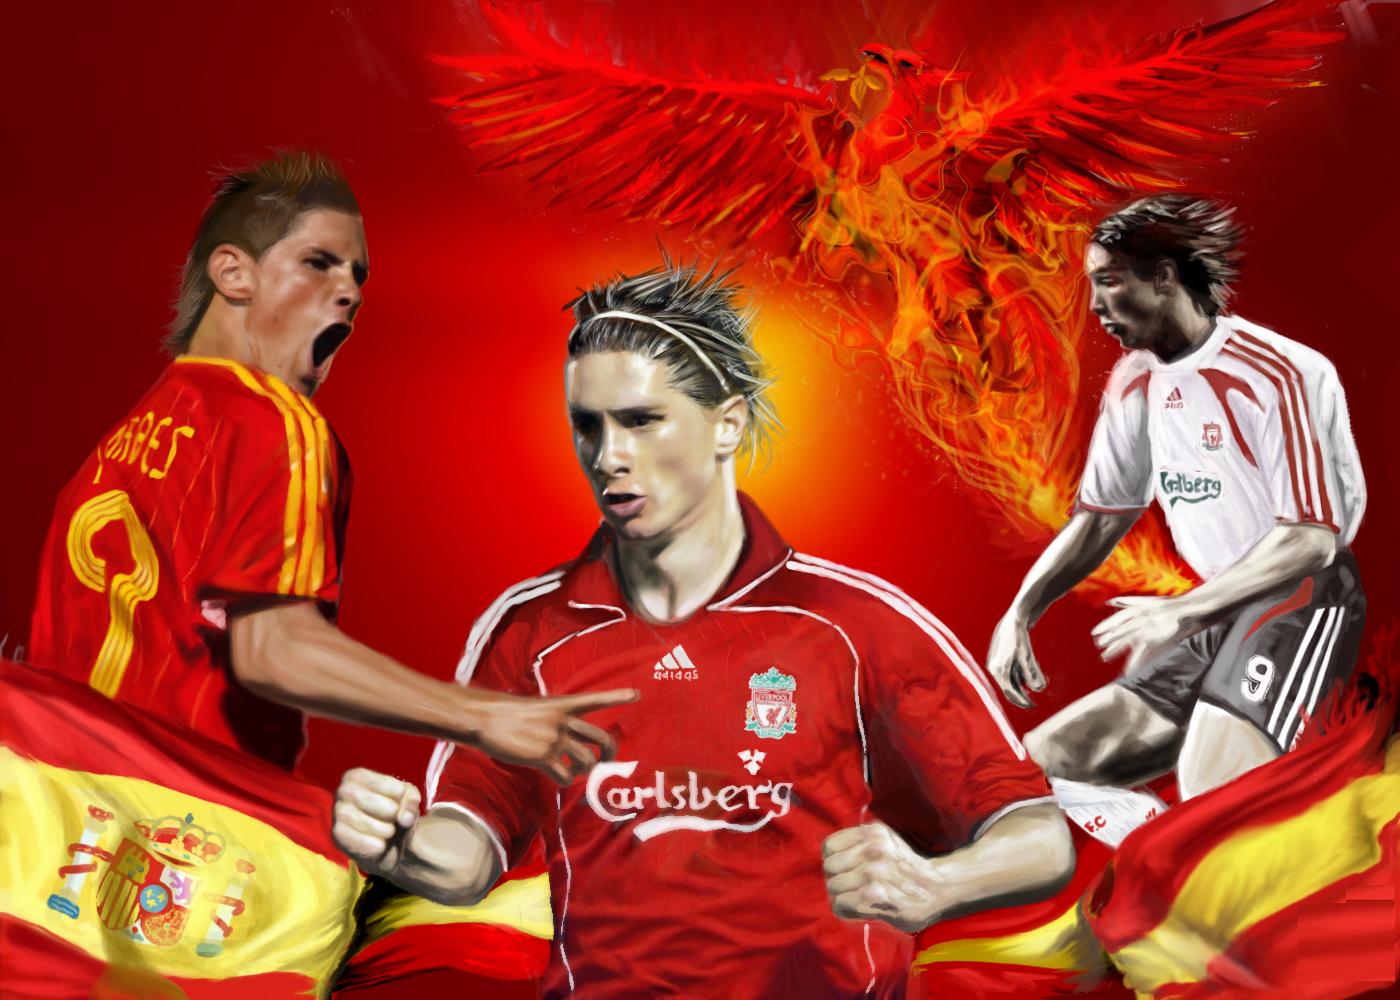 Fernando Torres Football Wallpaper